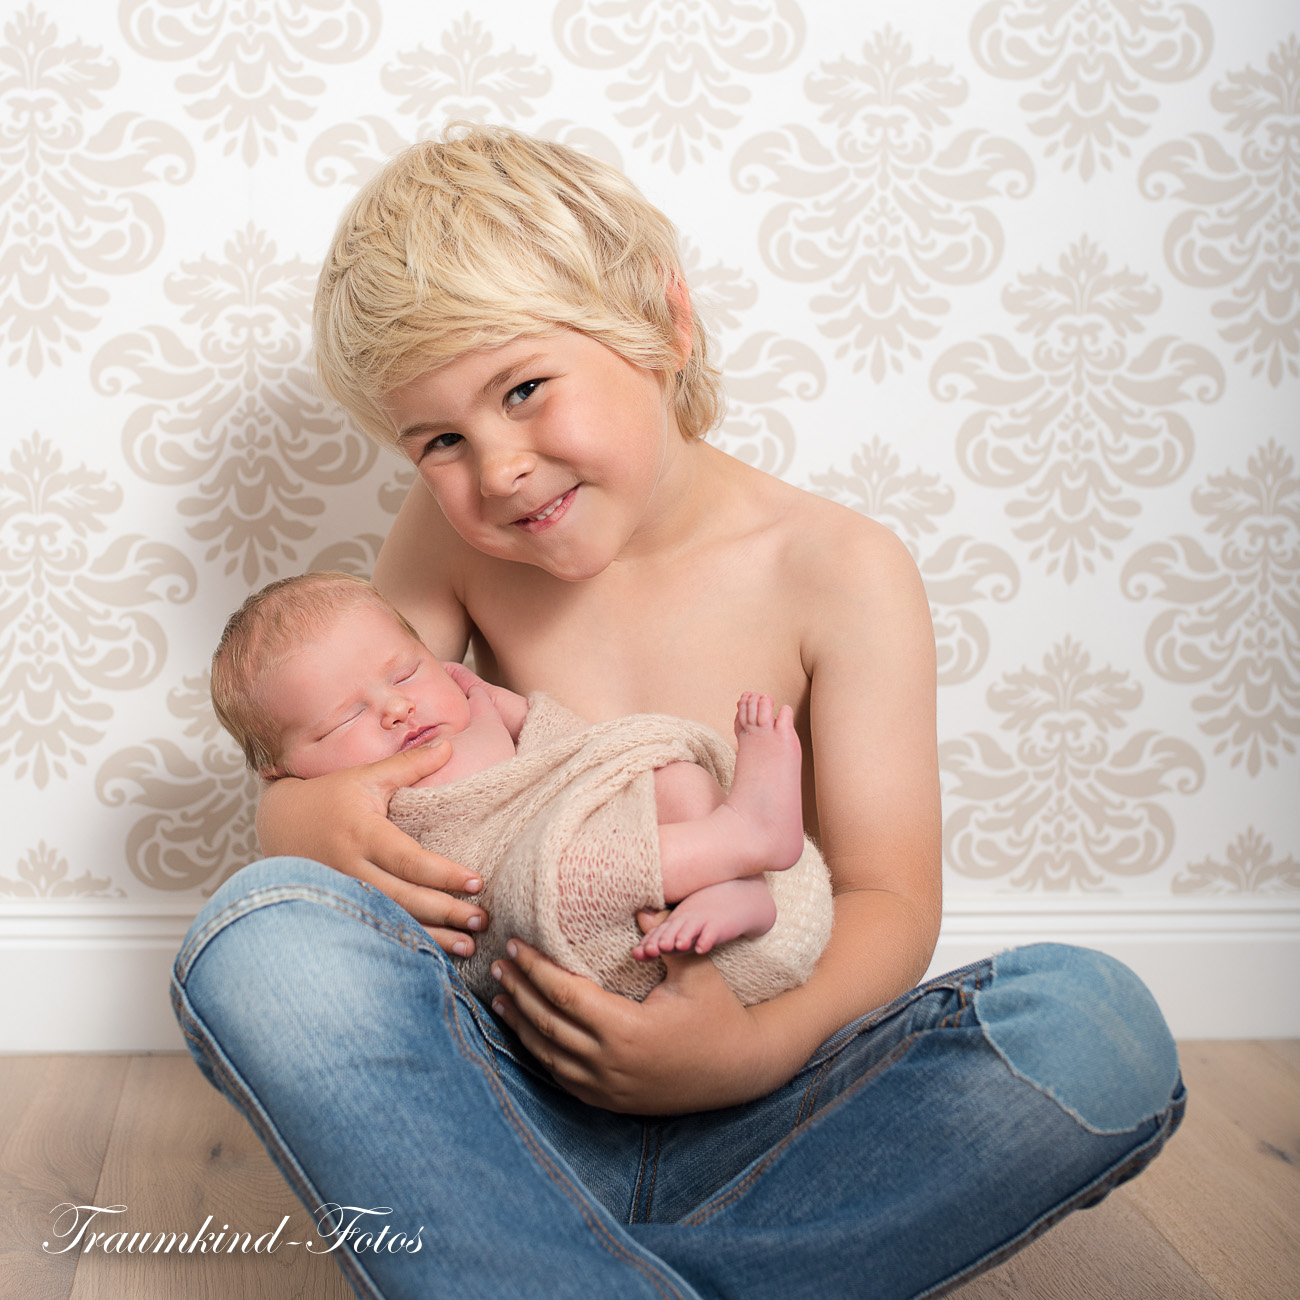 Traumkind Fotos Babyfotografie Essen 3 - Kinder & Familienfotos